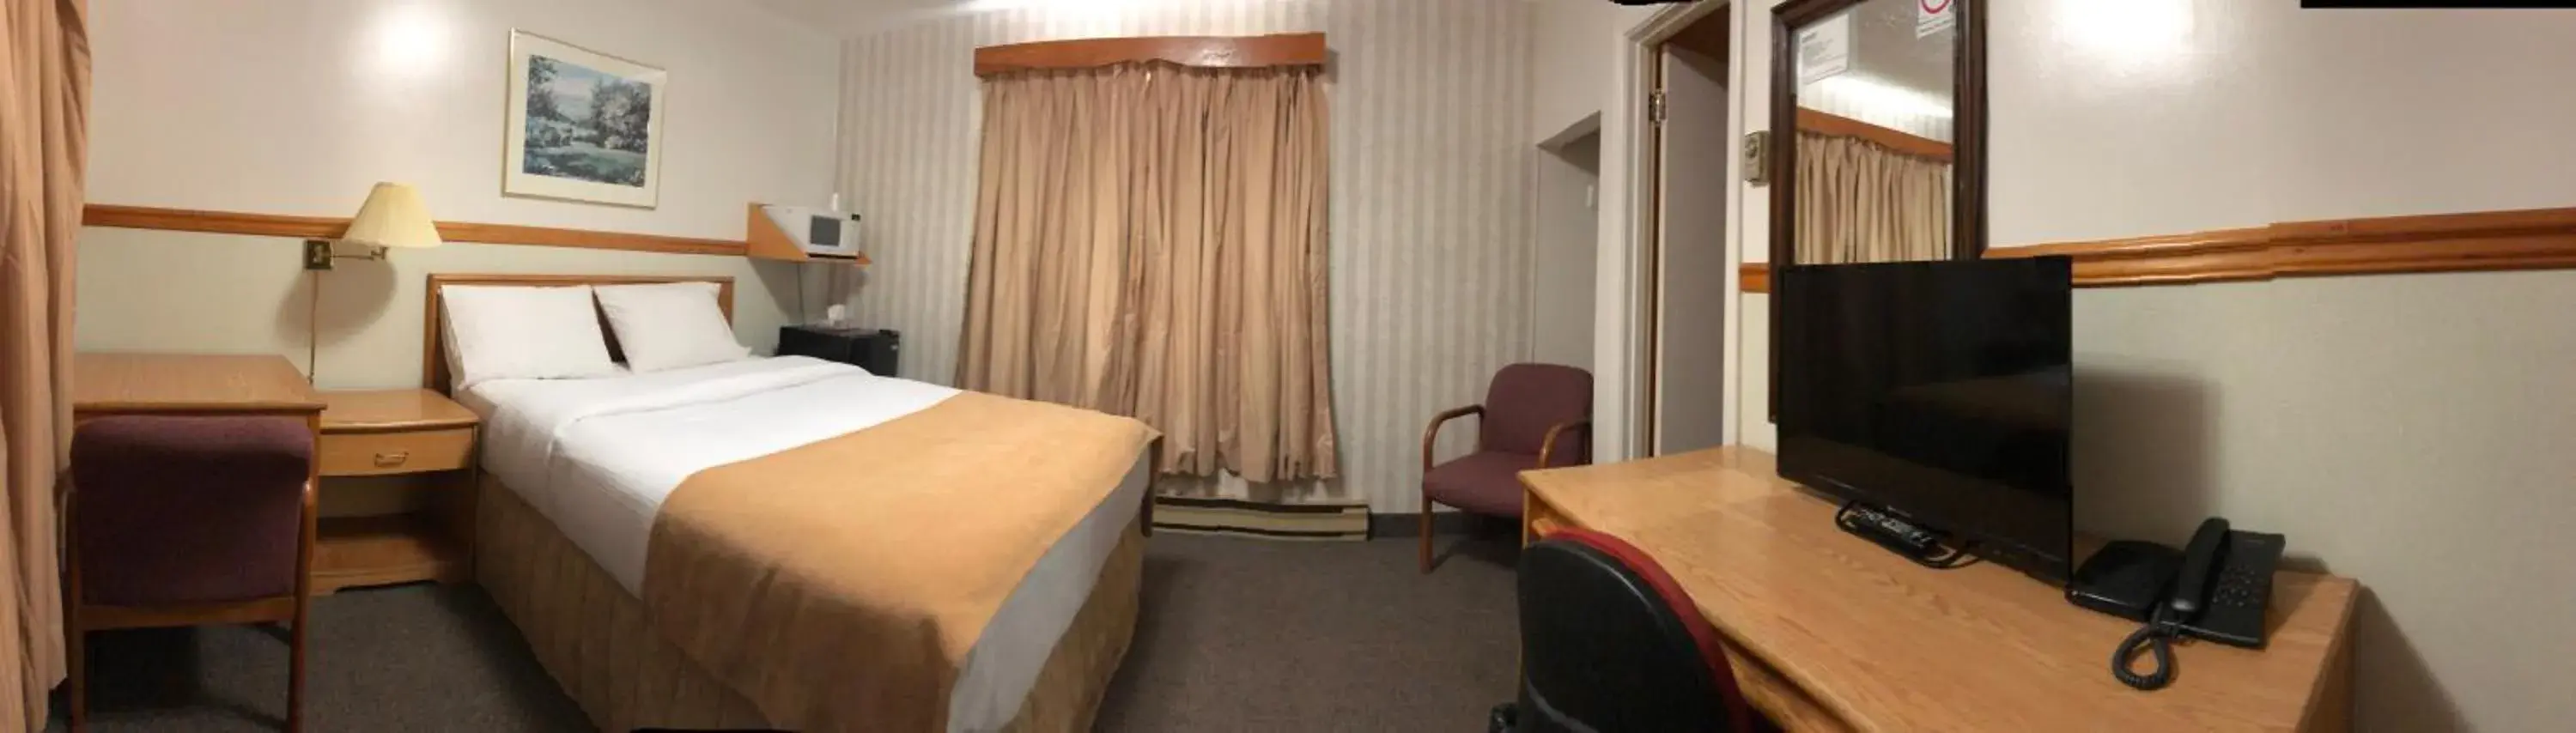 Bed in Kingsway Inn